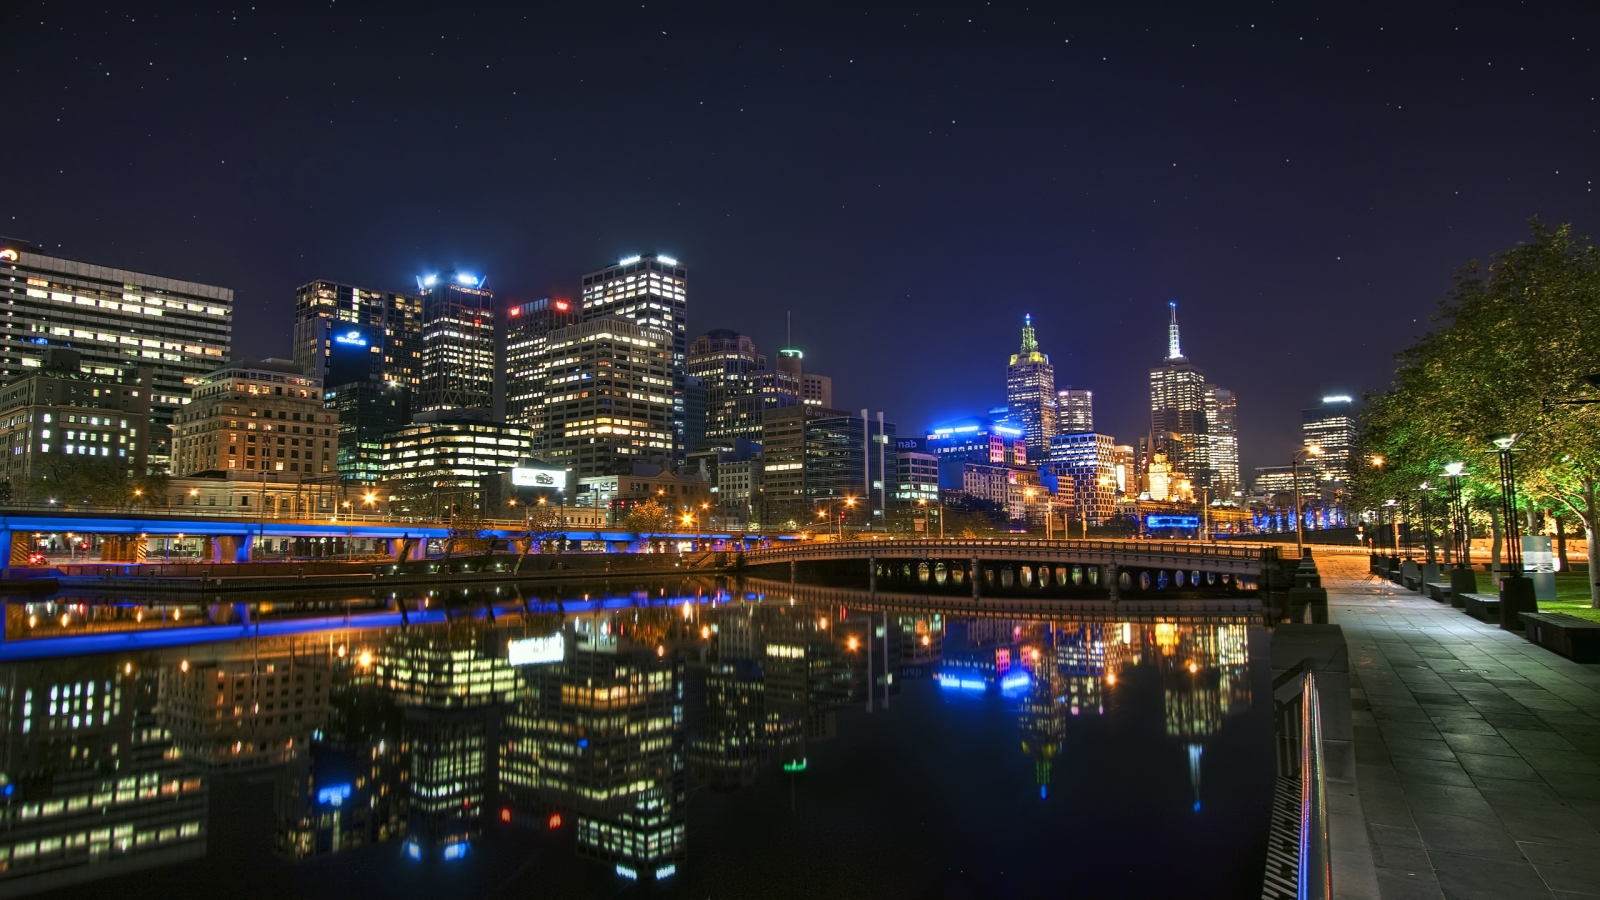 Melbourne Night Landscape for 1600 x 900 HDTV resolution